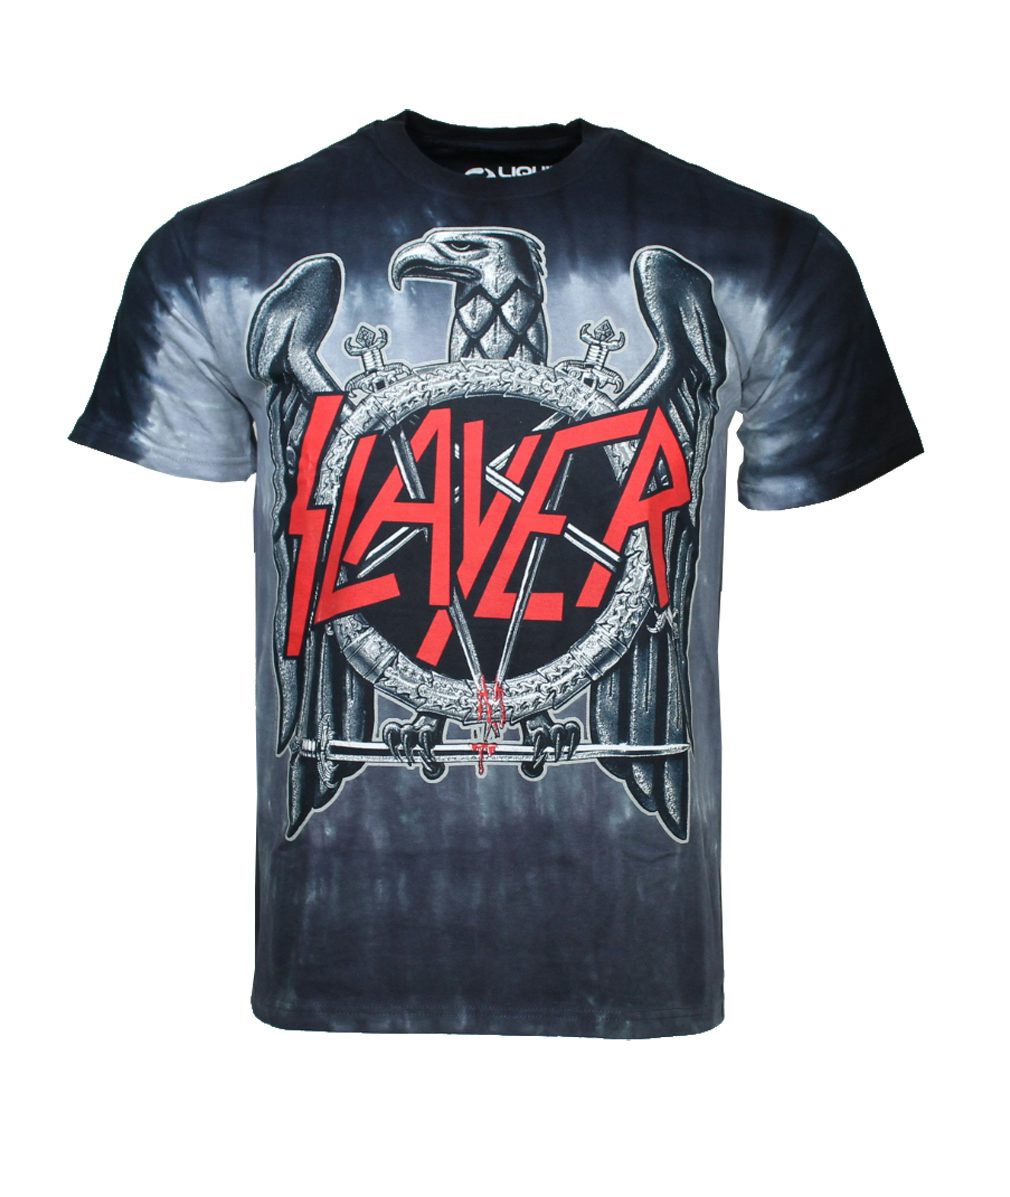 Regular Slayer Eagle Men T-Shirt white-black 